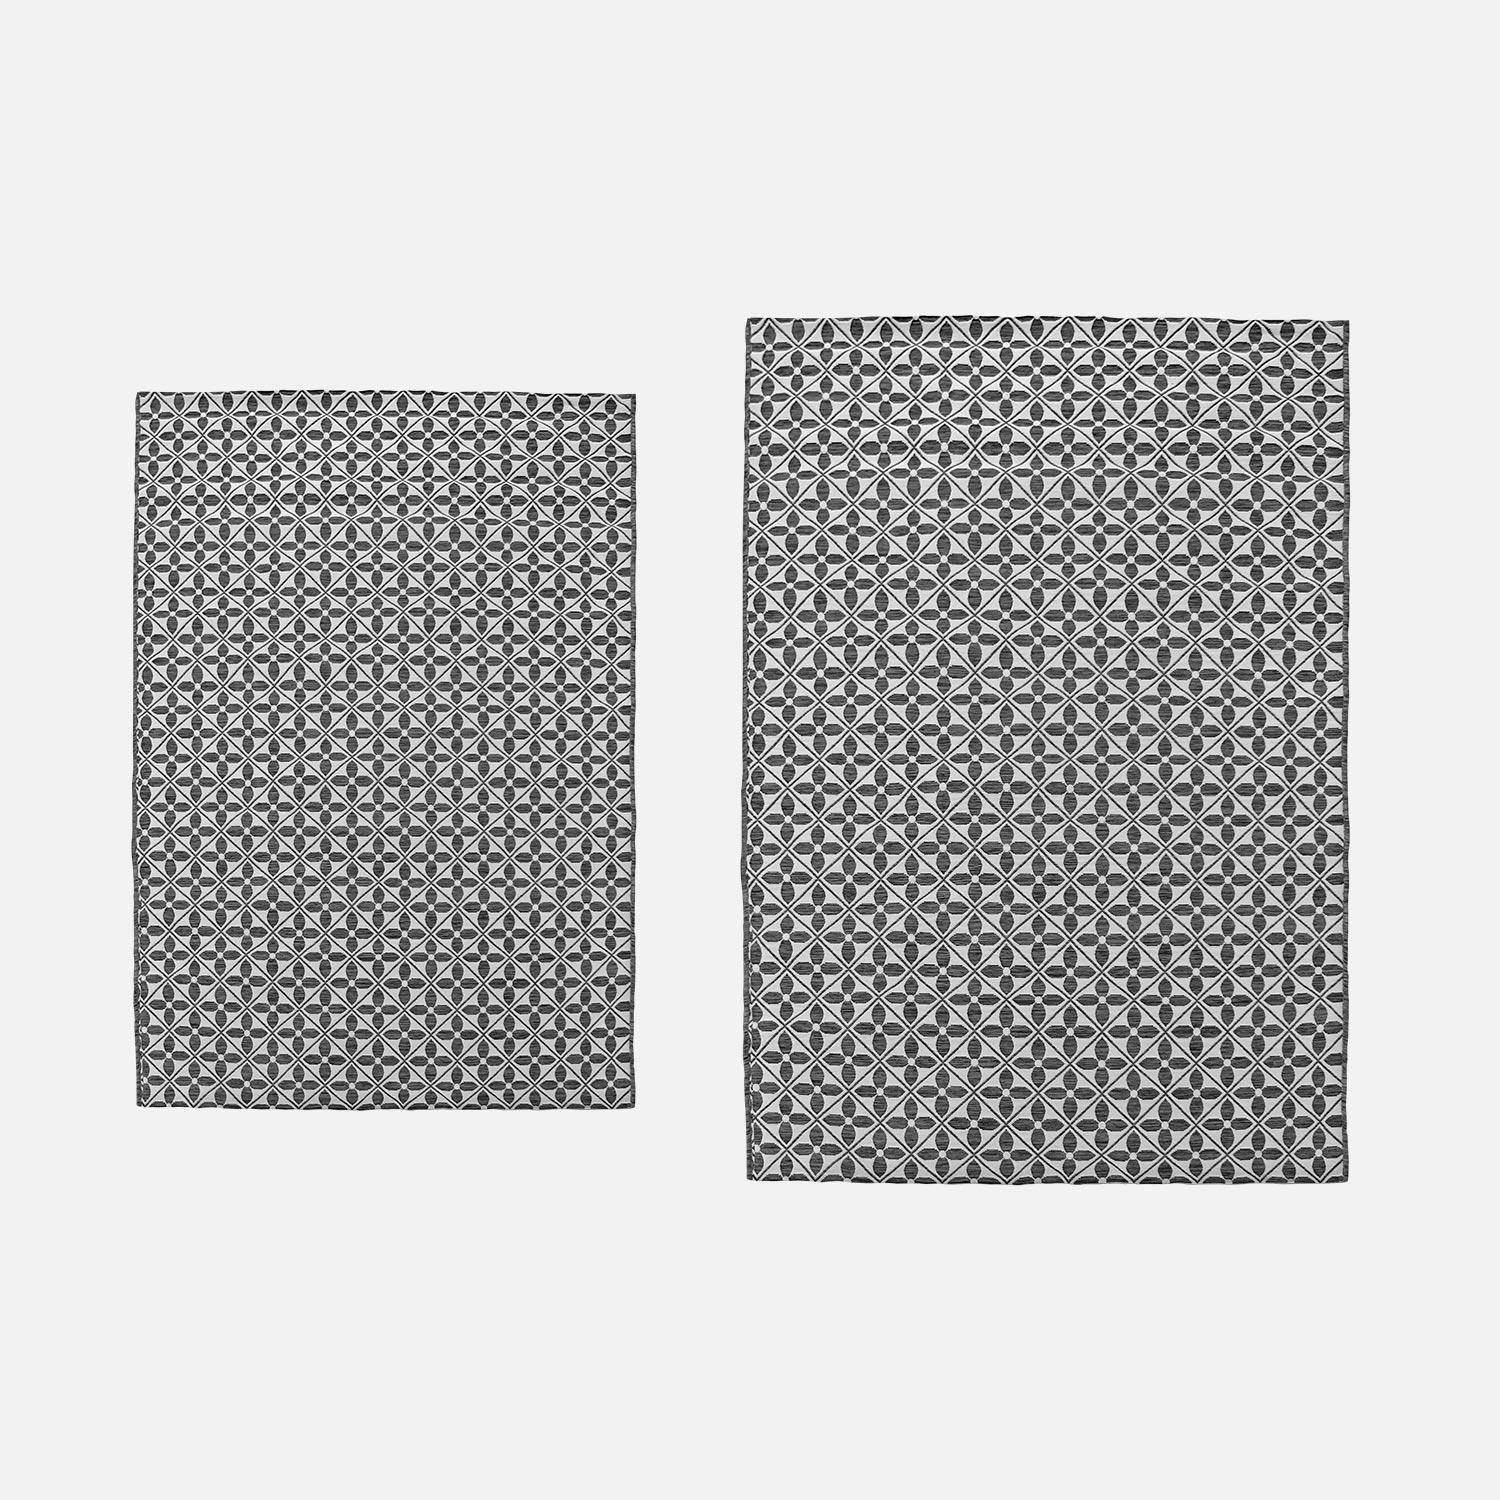 Alcatifa para exterior/interior 290 x 200 cm, densidade 1,15 kg/m2, padrão de ladrilhos de cimento, com tratamento UV, todas as estações Photo3